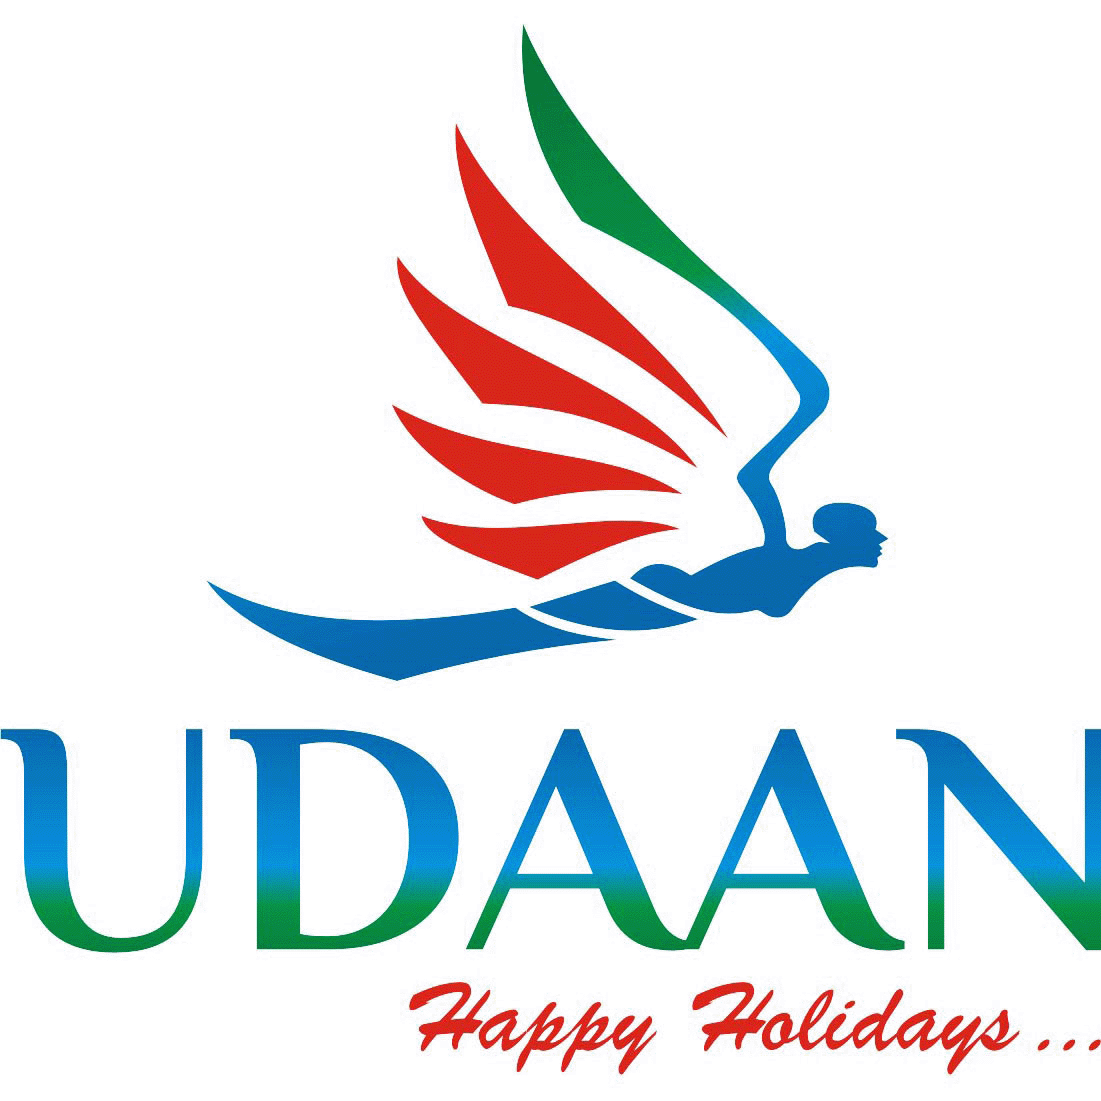 udaan happy holidays